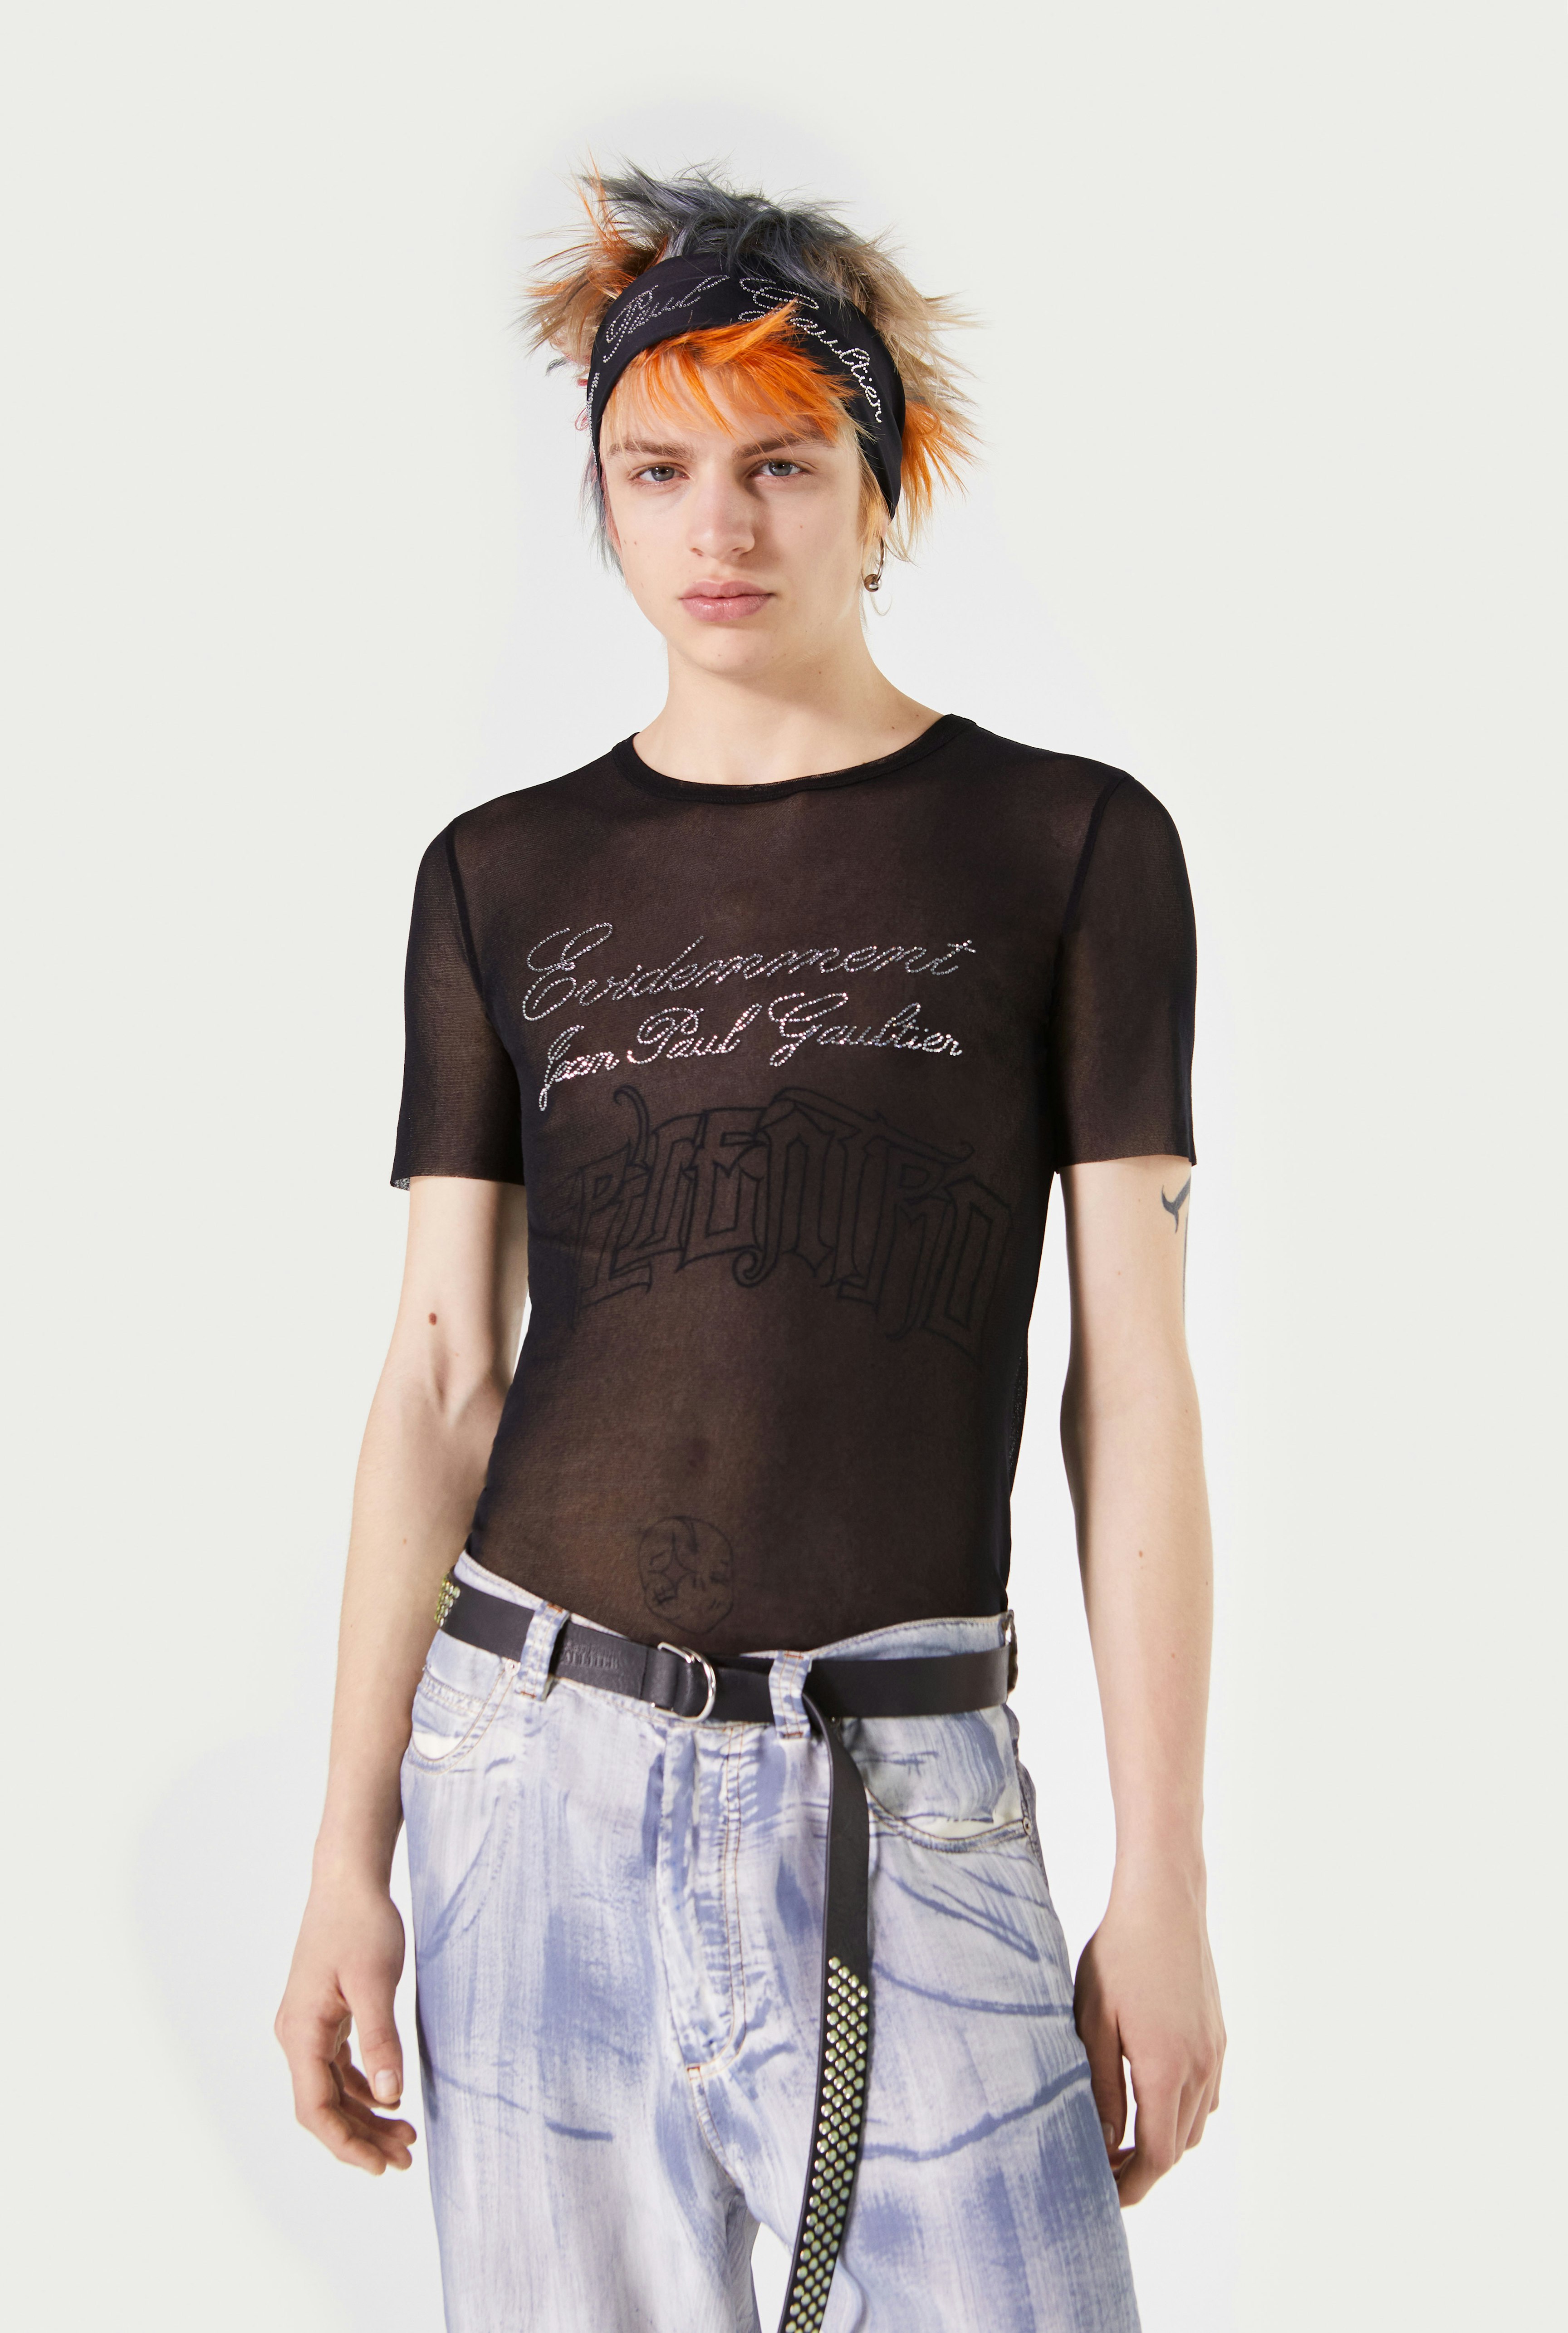 The Black Évidemment Tulle T-Shirt Jean Paul Gaultier